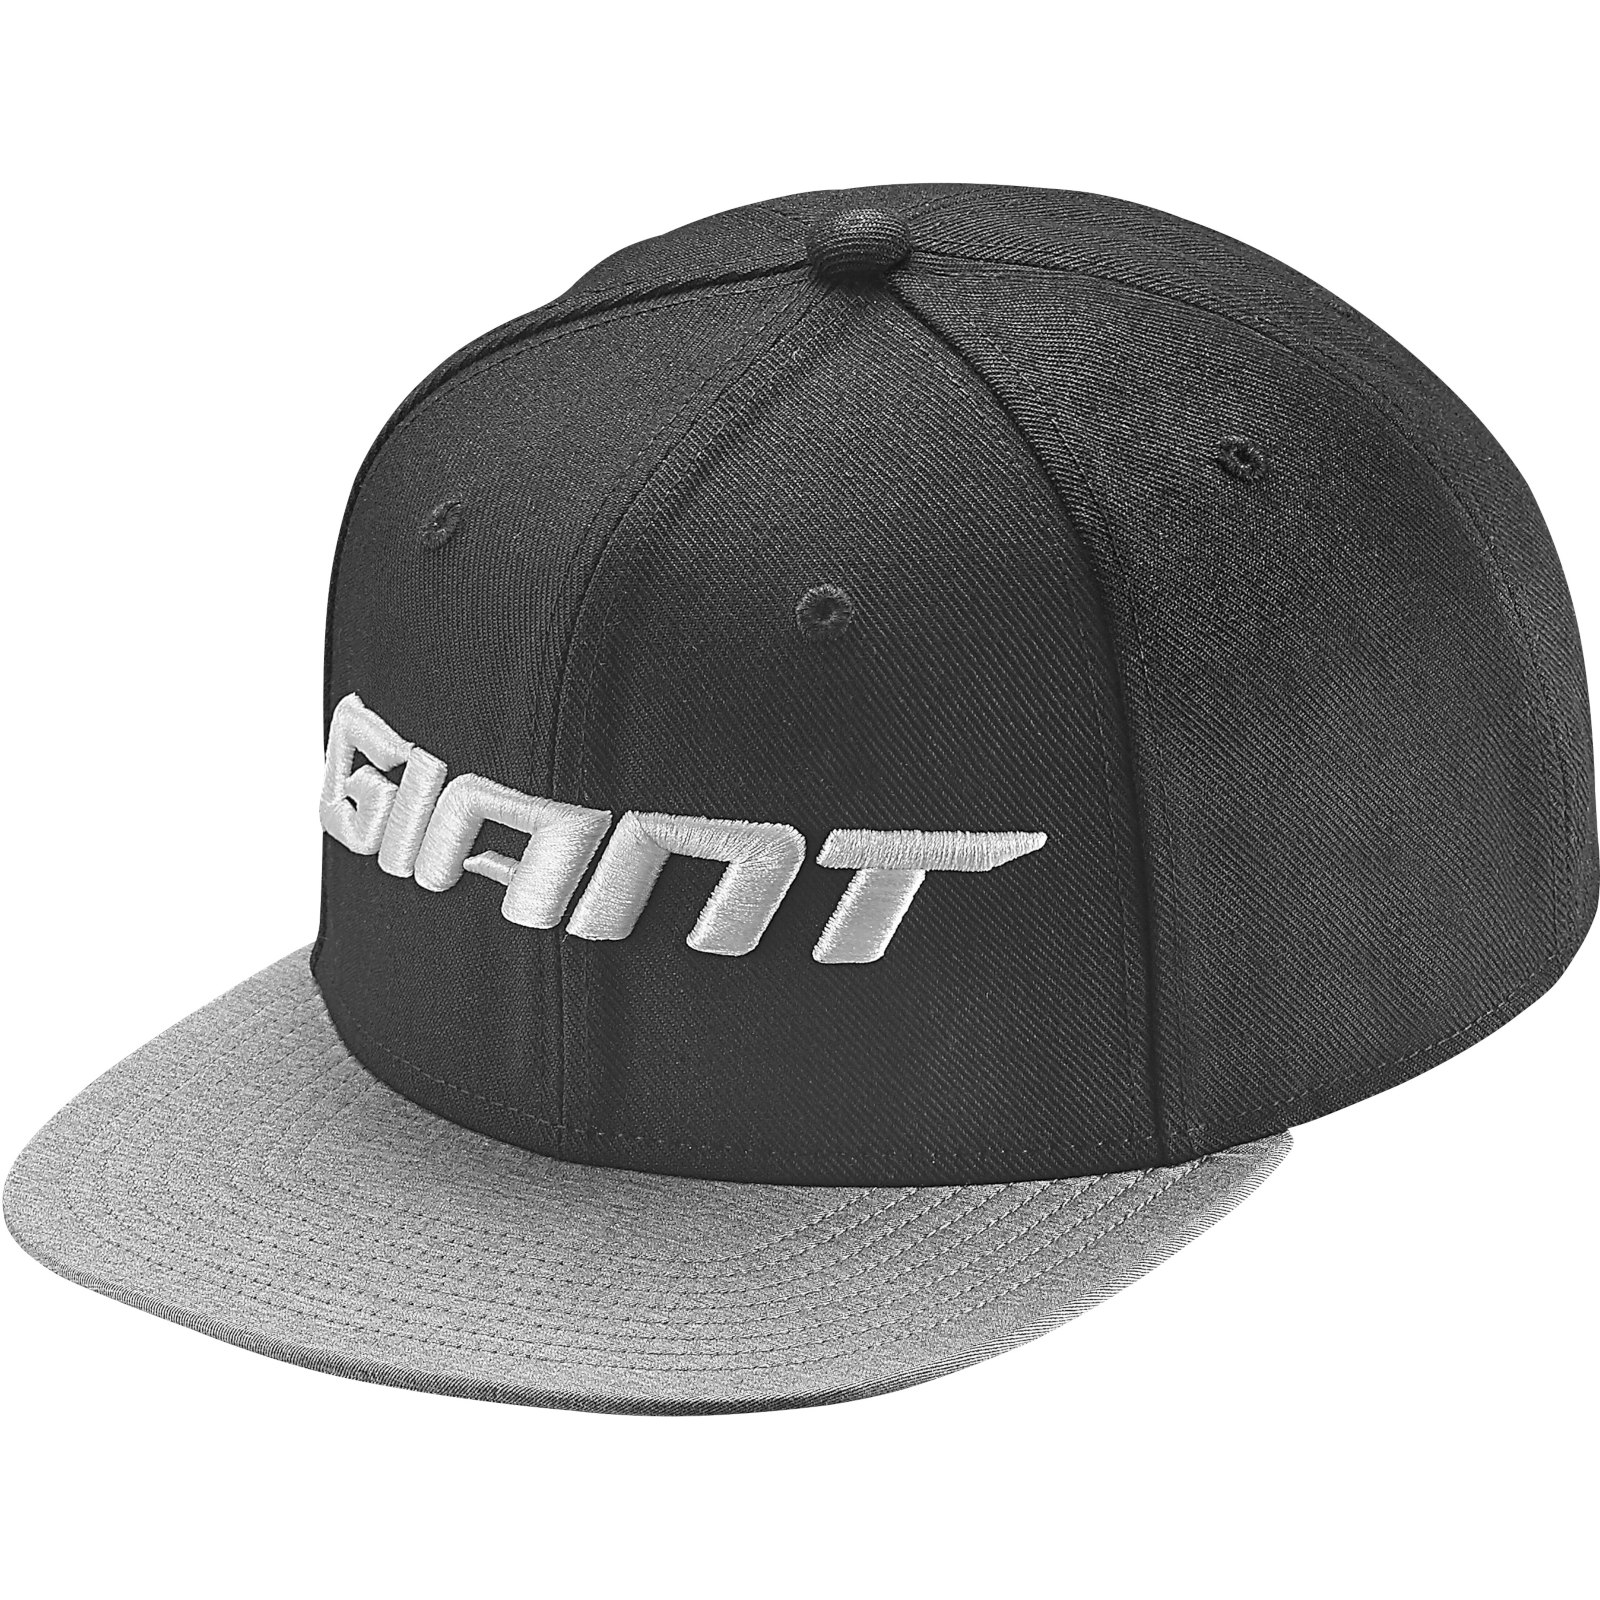 Picture of Giant Trucker Cap - black/grey